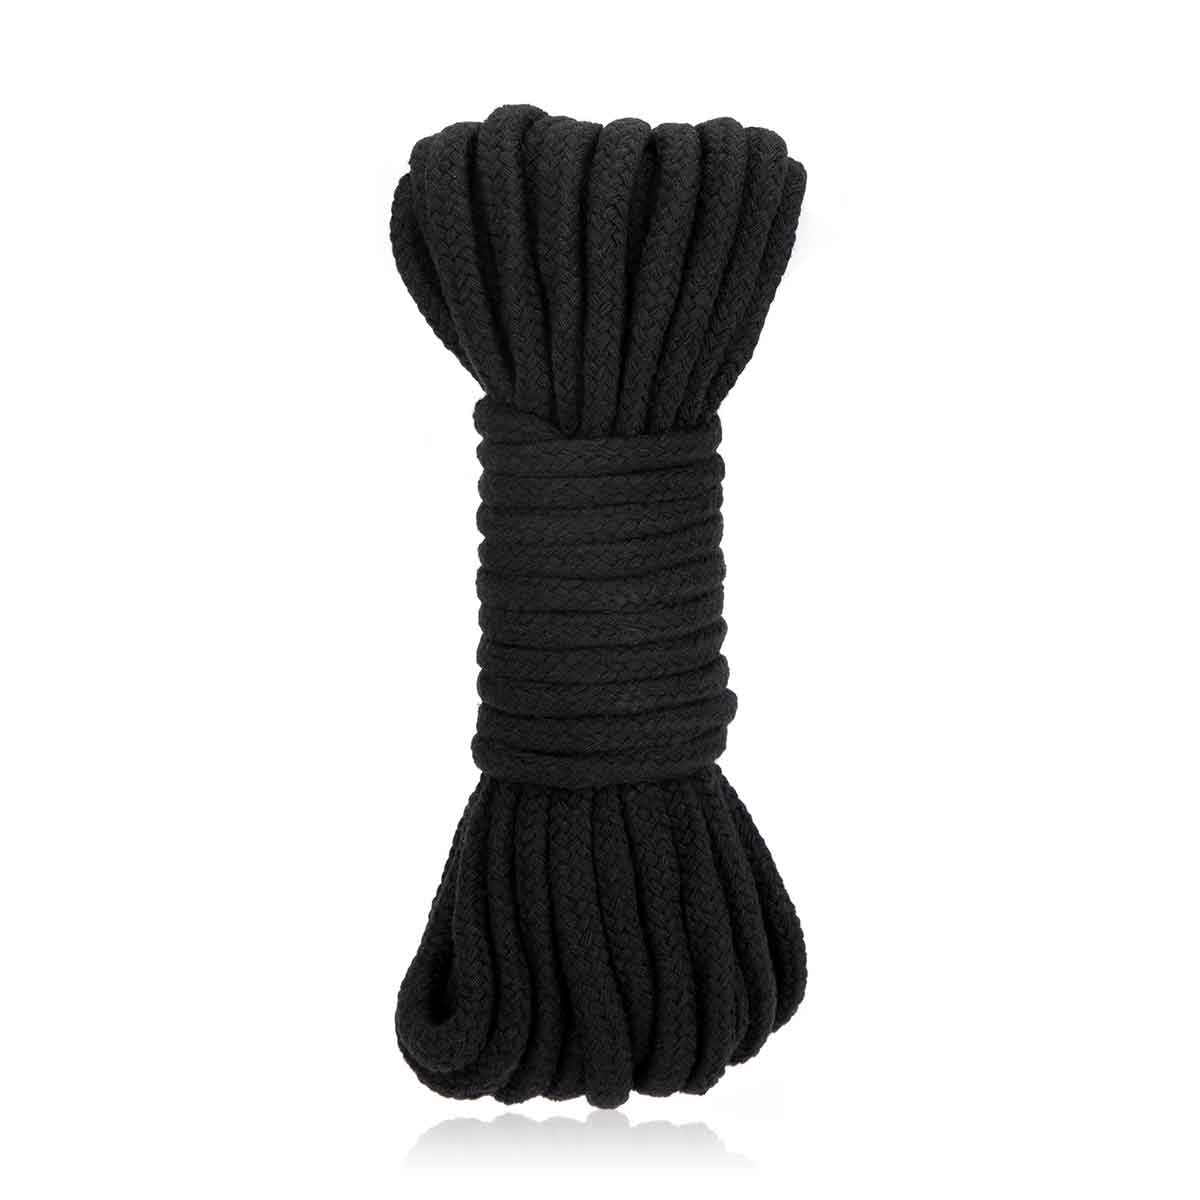 Купить Черная хлопковая веревка для связывания Bondage Rope - 10 м. по цене  3 570 руб. ☛ Доставка по всей России Интернет-магазин Товары со Смыслом! ☎  +7 (499) 647-89-99